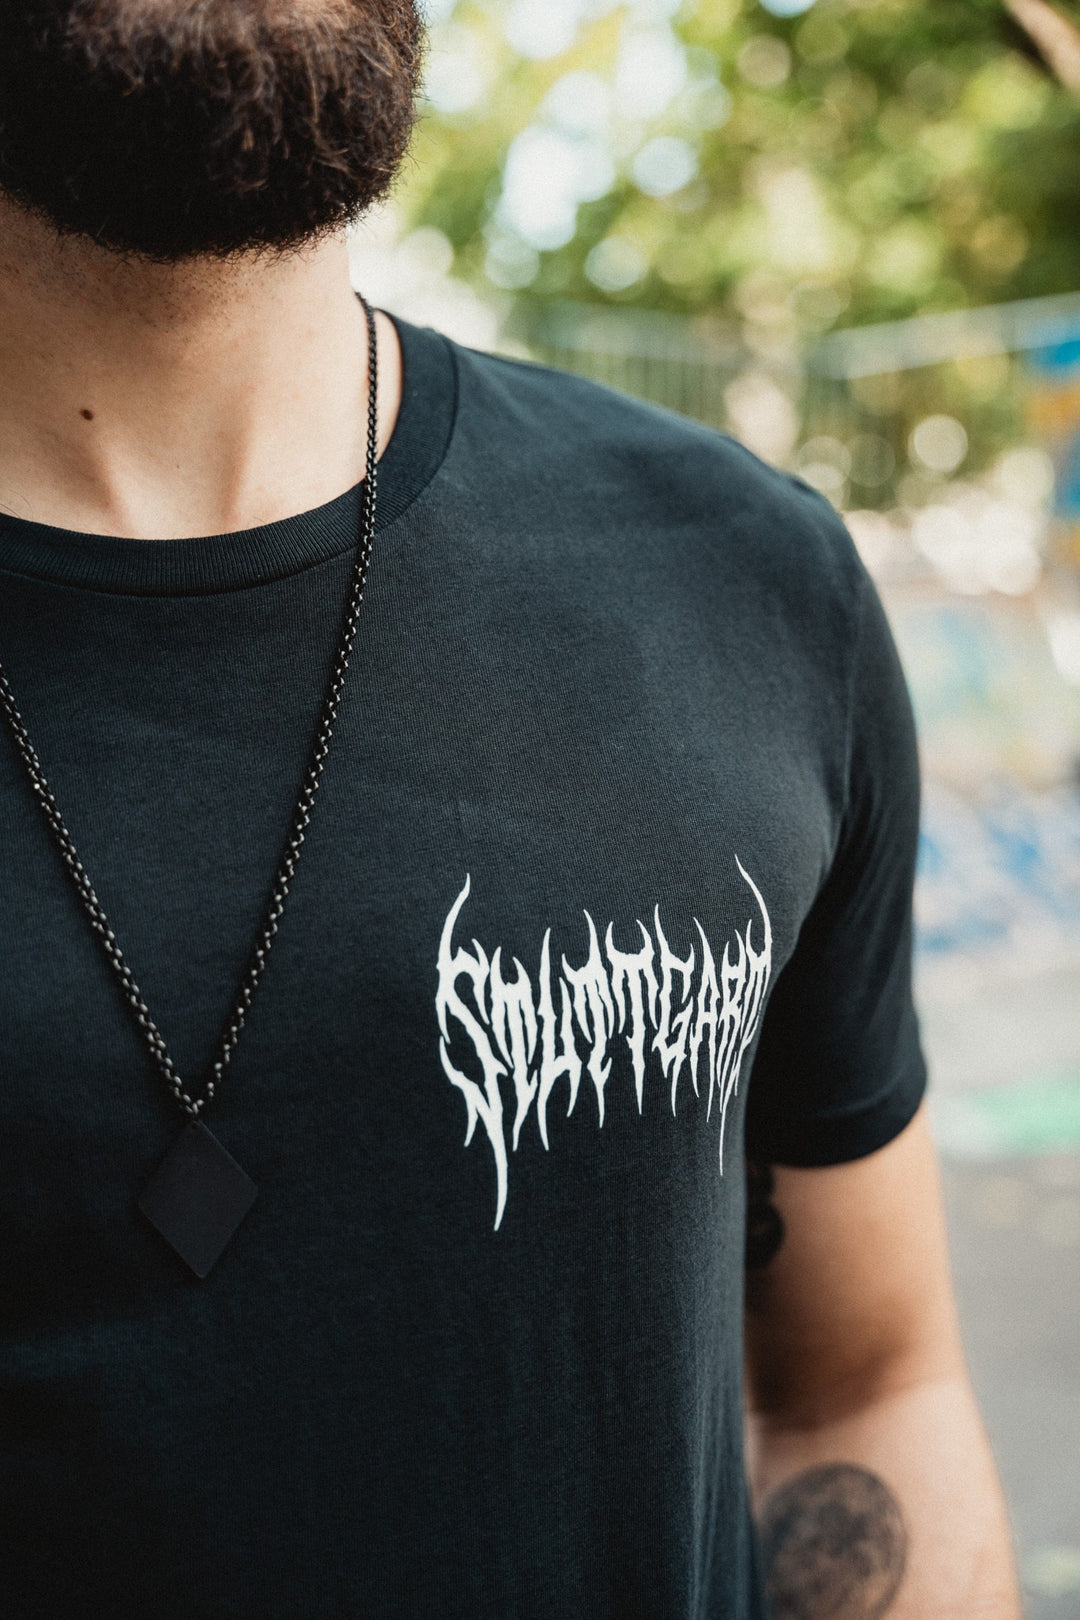 Stuttgart Metal Shirt